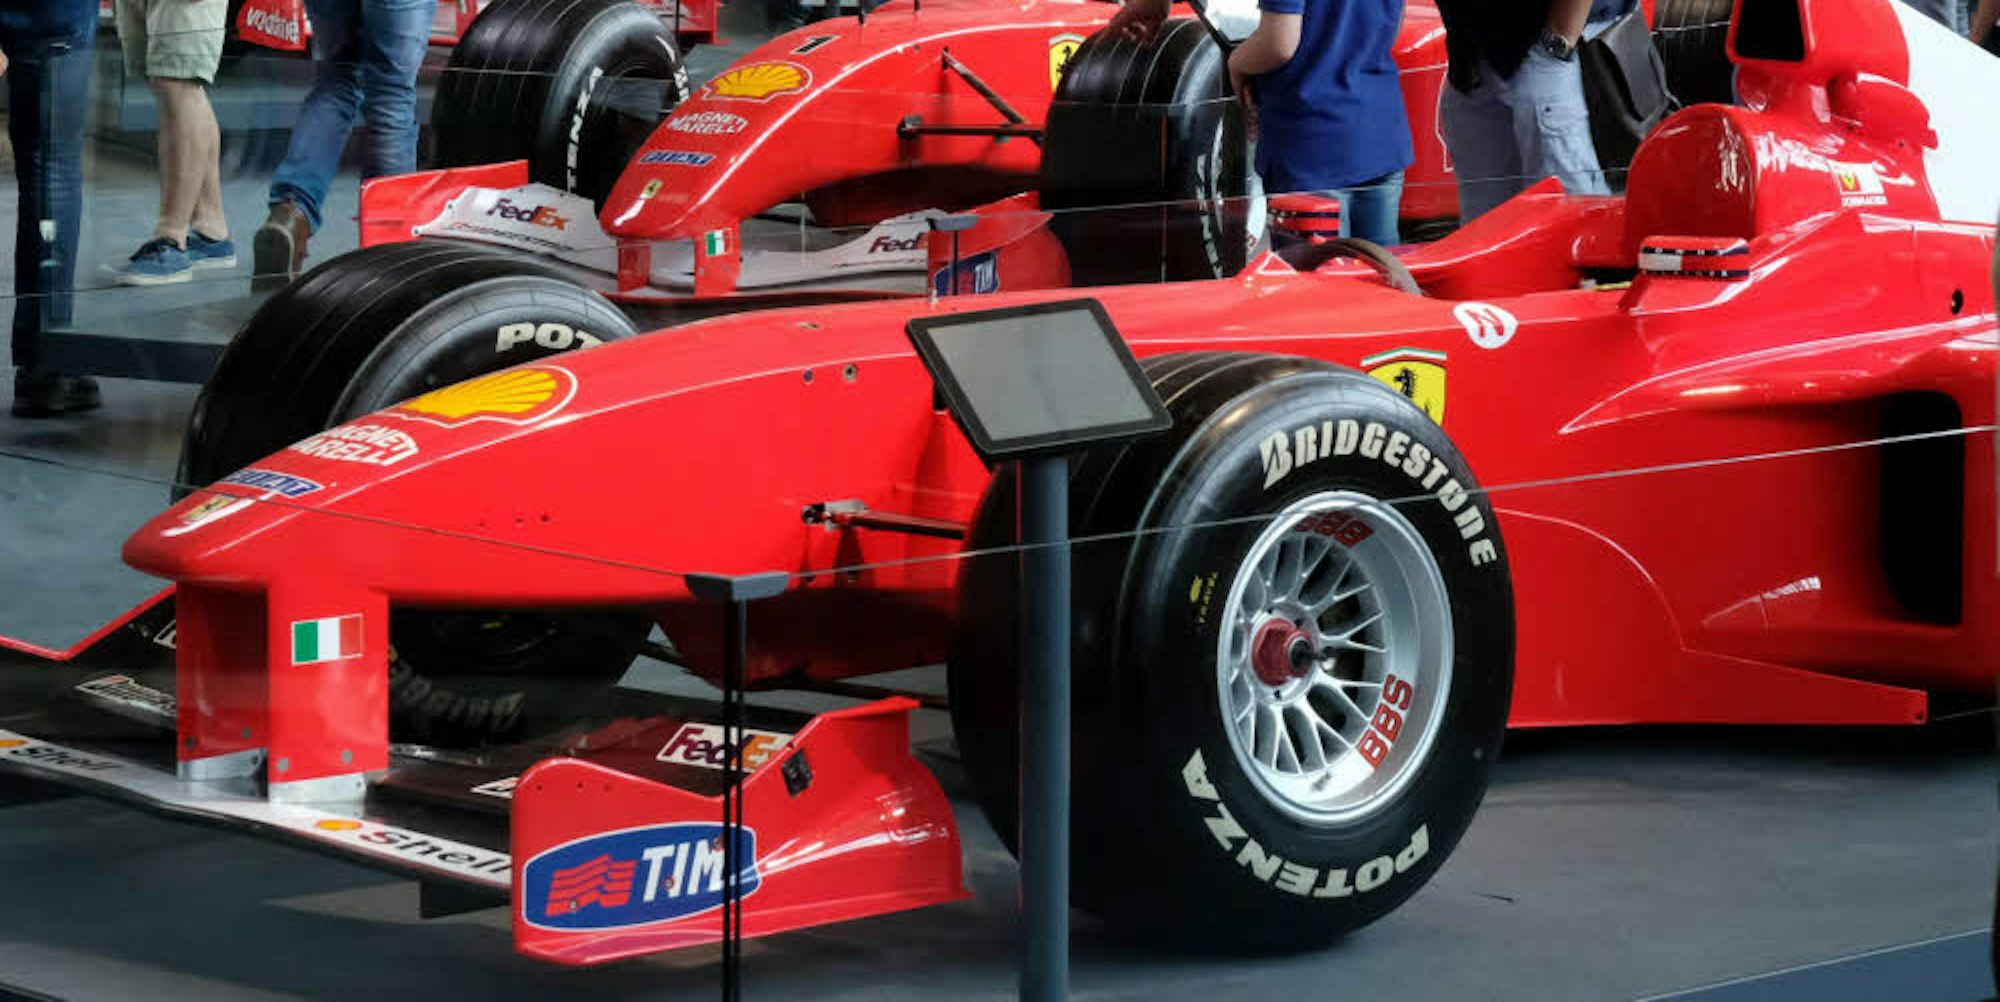 Diesen Ferrari-Rennwagen fuhr Michael Schumacher in der Formel 1.